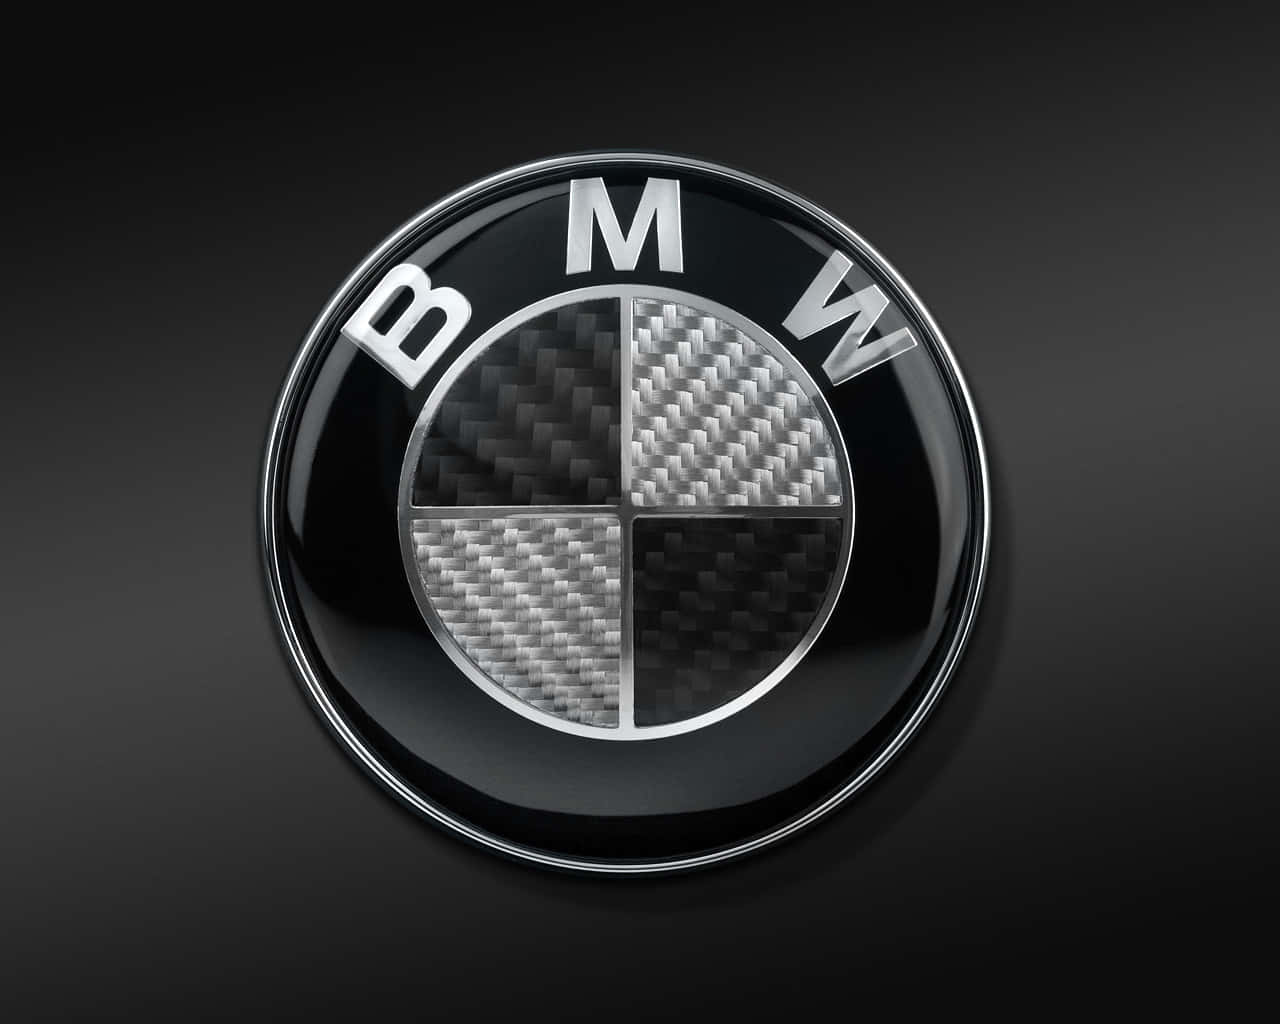 Denikoniska Silver- Och Blåa Bmw-logotypen.